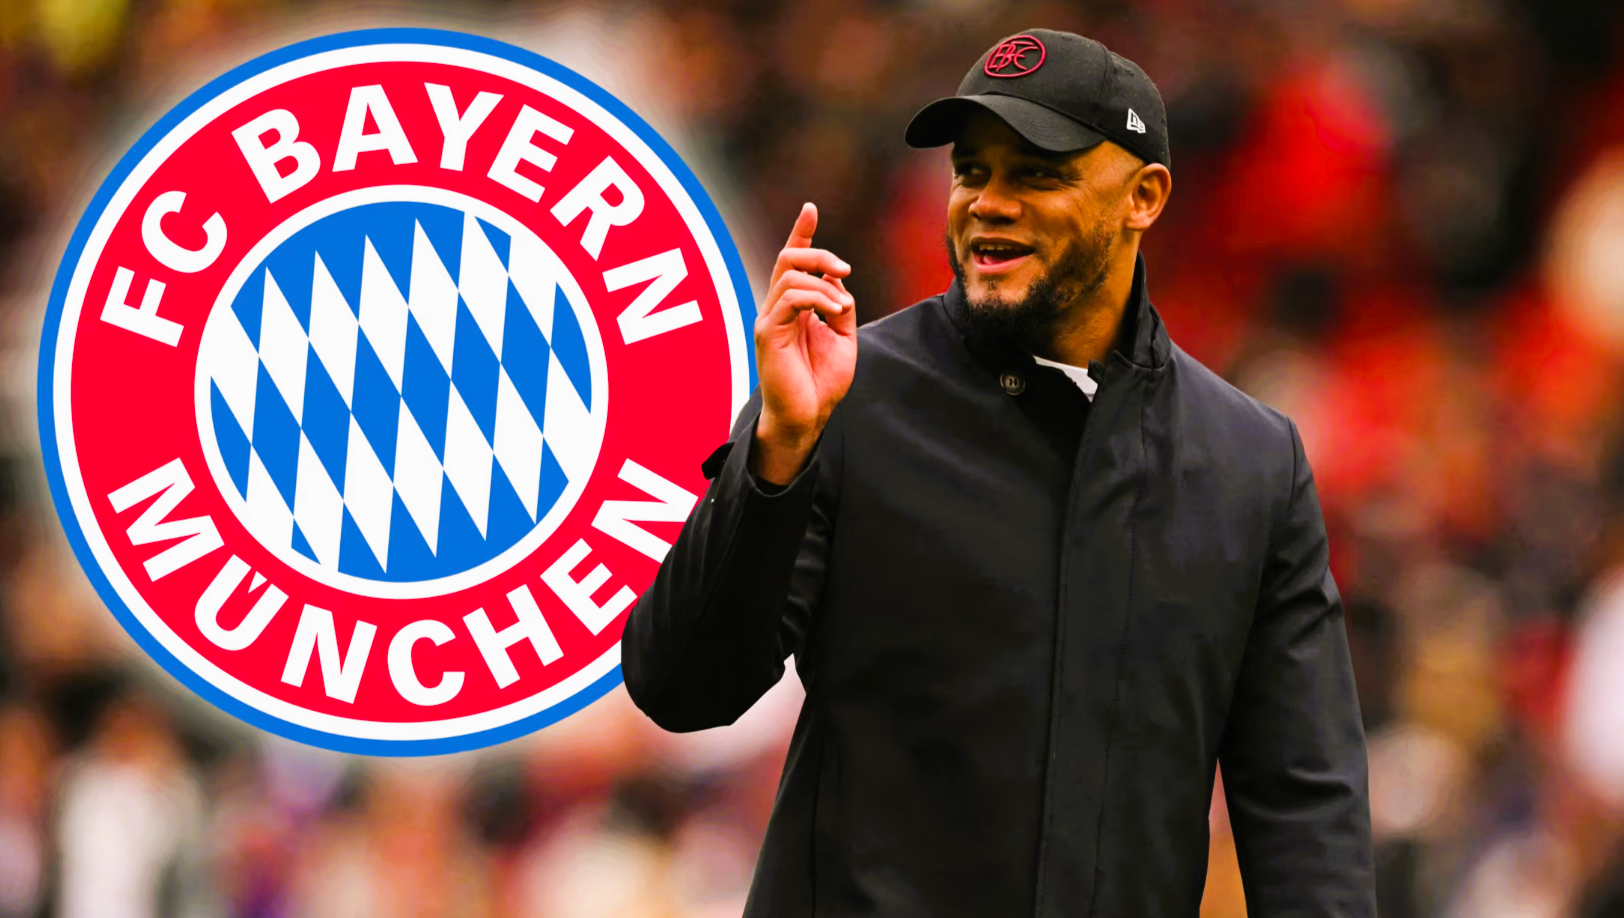 Neuer Bayern-Trainer ist endlich da! Mit Ihm hätte keiner gerechnet! Vorstellung nächste Woche!